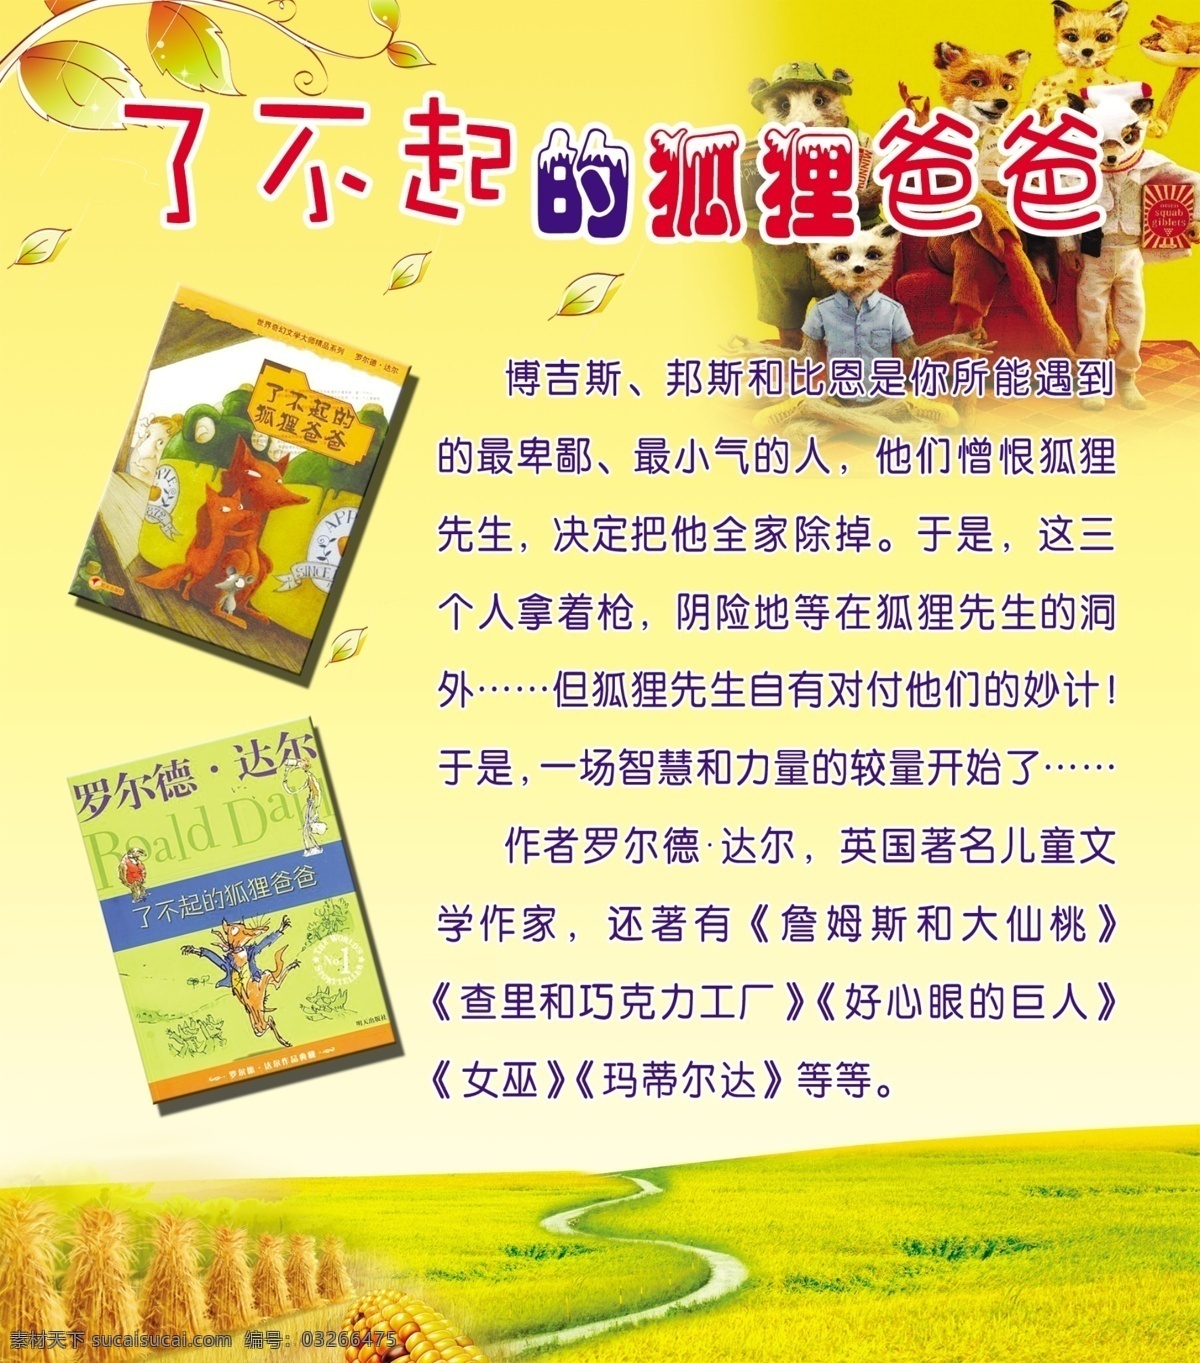 了不起 狐狸 爸爸 学校 展板 儿童 书籍 一家人 玉米 草地 金黄背景 树叶 罗尔德 达尔 作品 广告设计模板 源文件